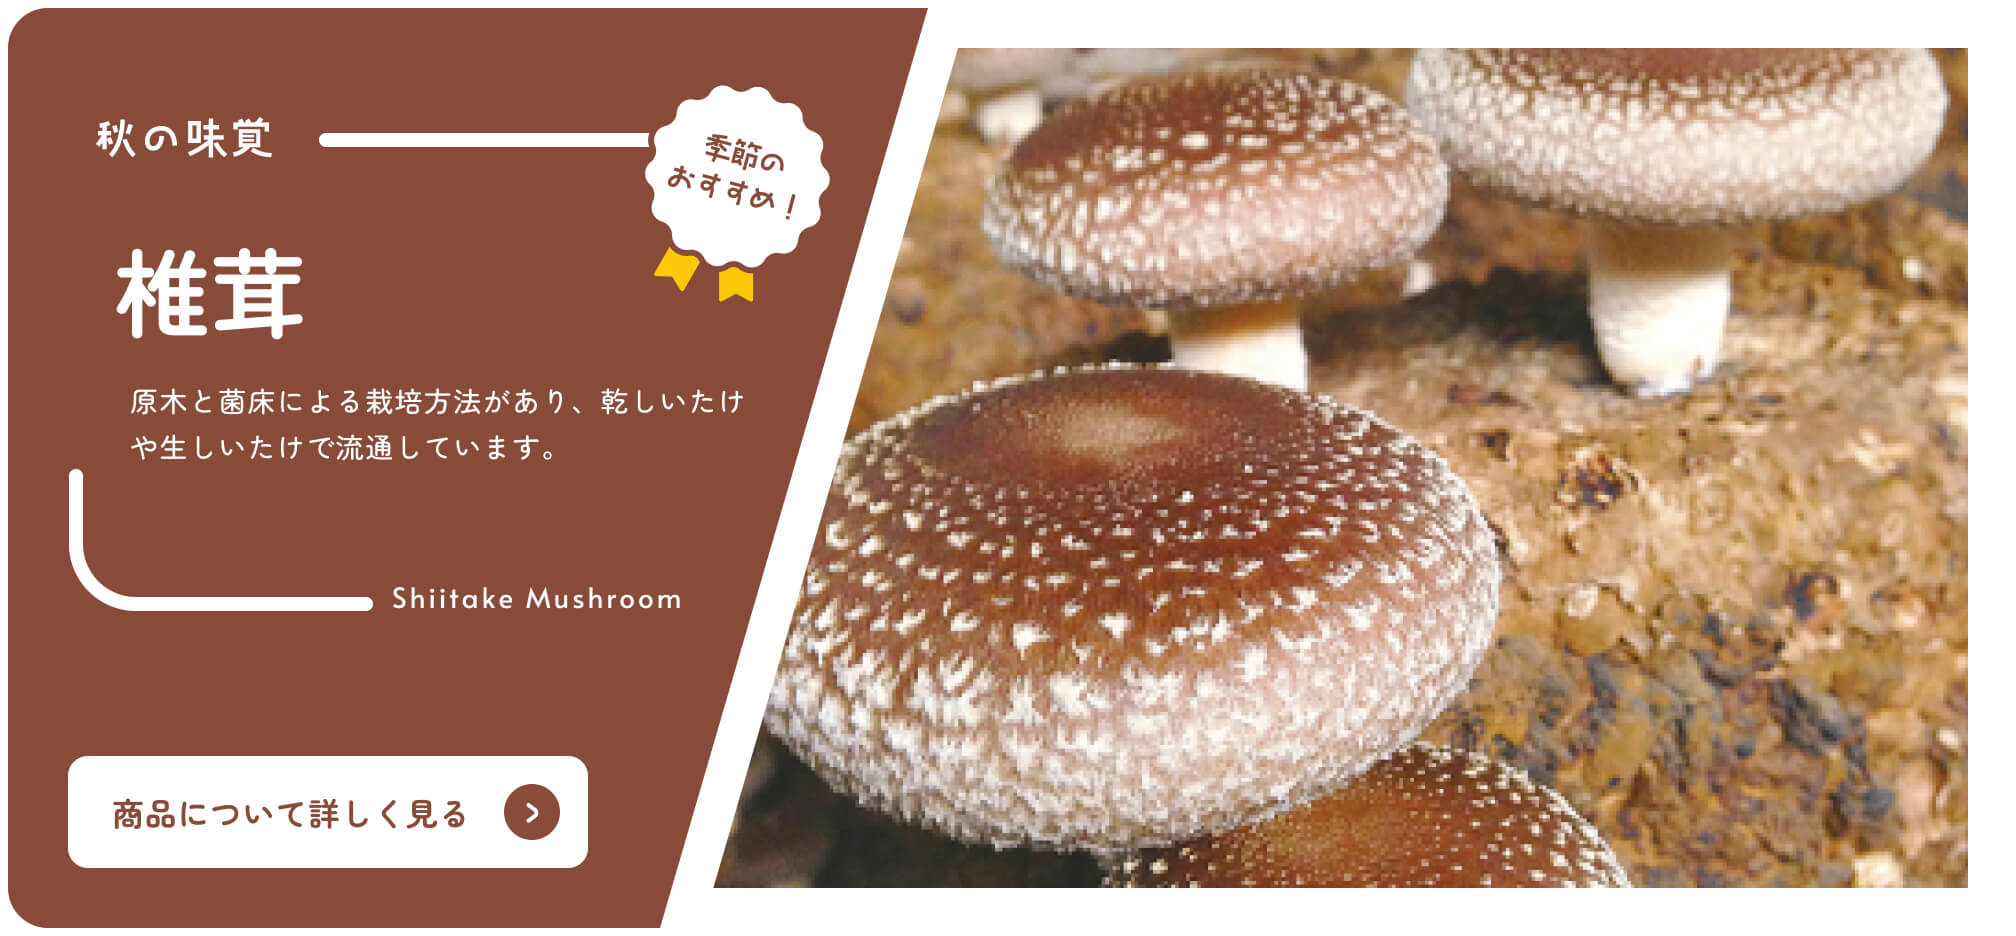 Von Shizuoka Online-Katalog Saisonale Empfehlungen Shiitake-Pilze